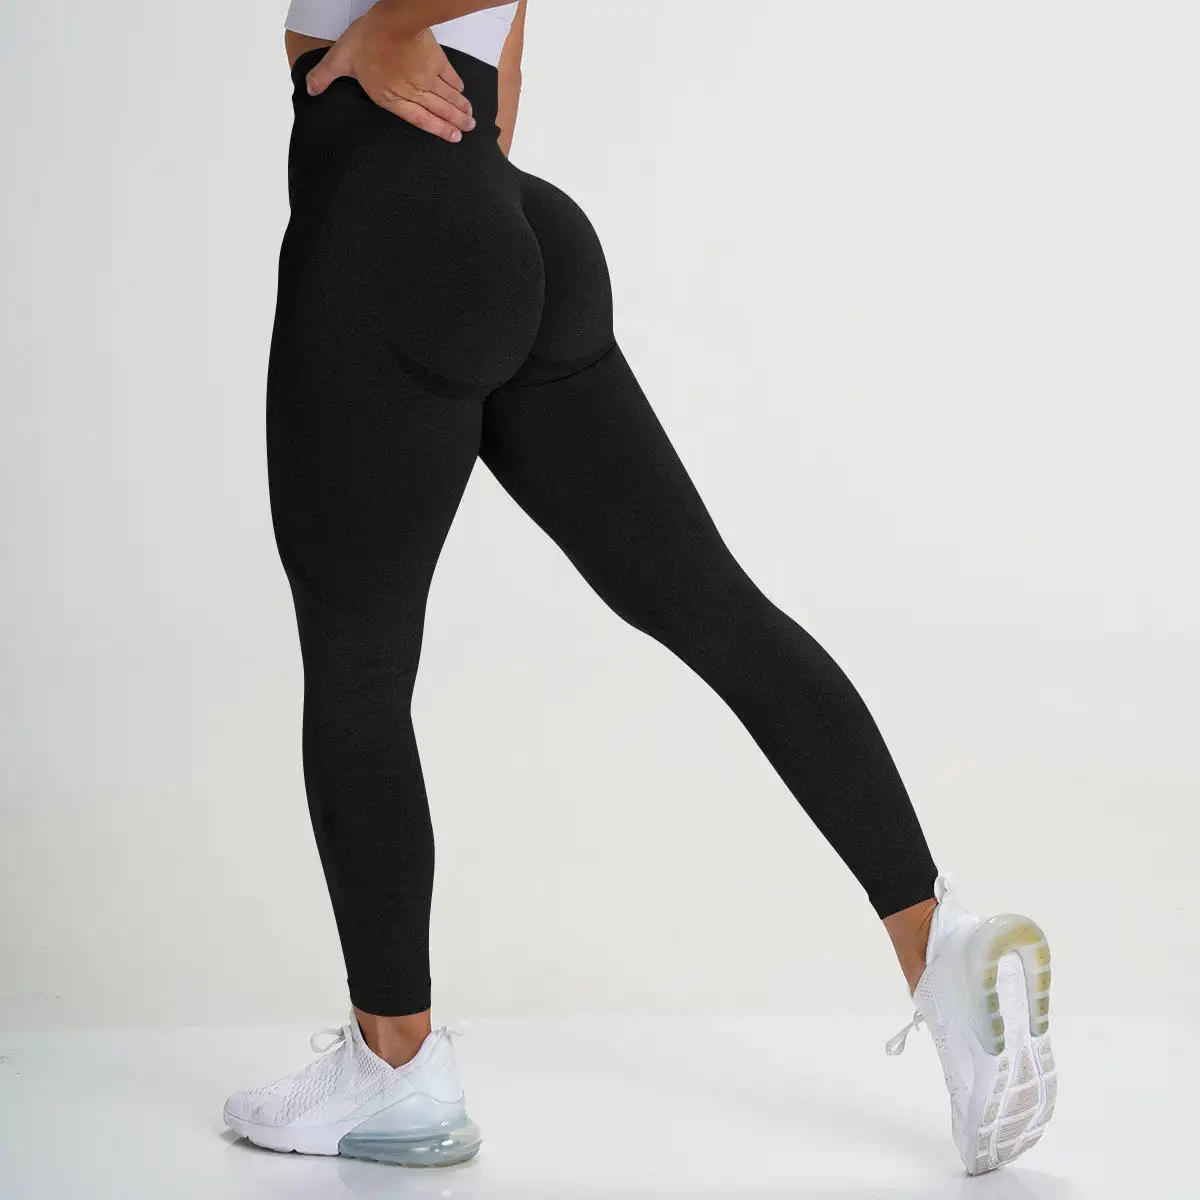 Kadınlar için toptan özel tayt yüksek bel spor Yoga pantolon dikişsiz tayt Unisex örme yüksek kalite kadın tayt 50 adet